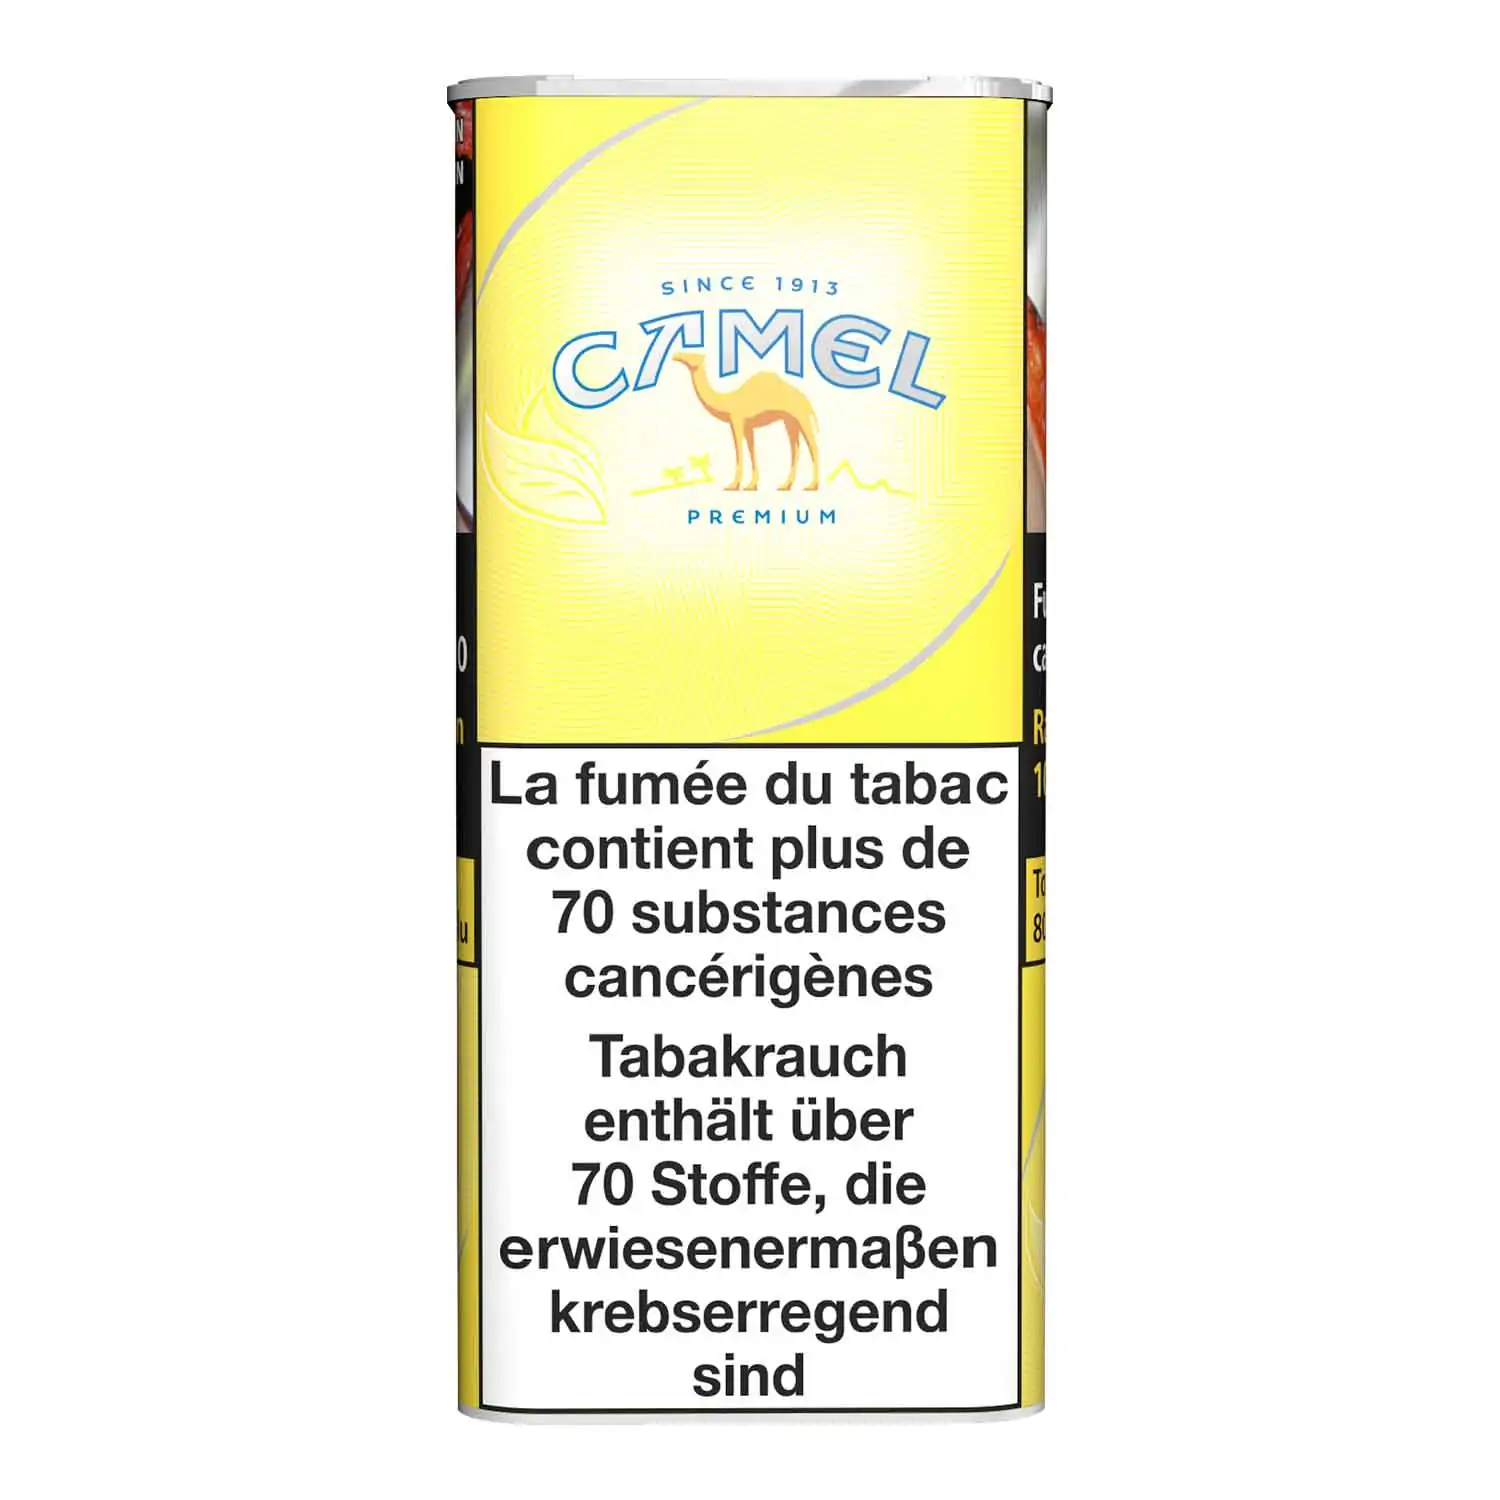 Camel premium jaune 300g - Buy at Real Tobacco